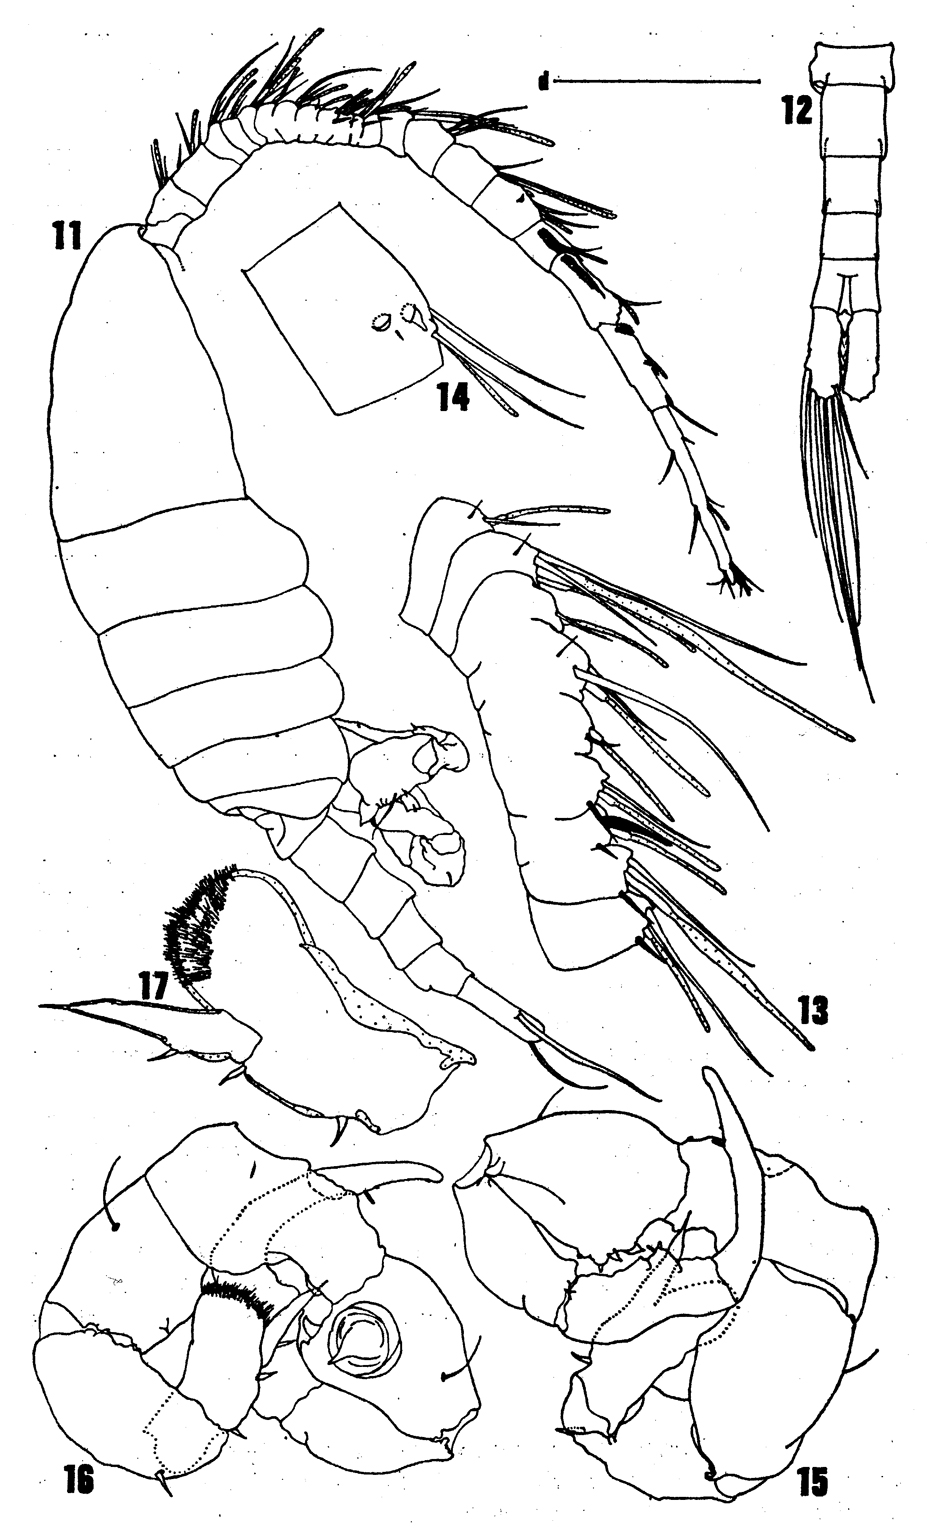 Species Eurytemora richingsi - Plate 3 of morphological figures